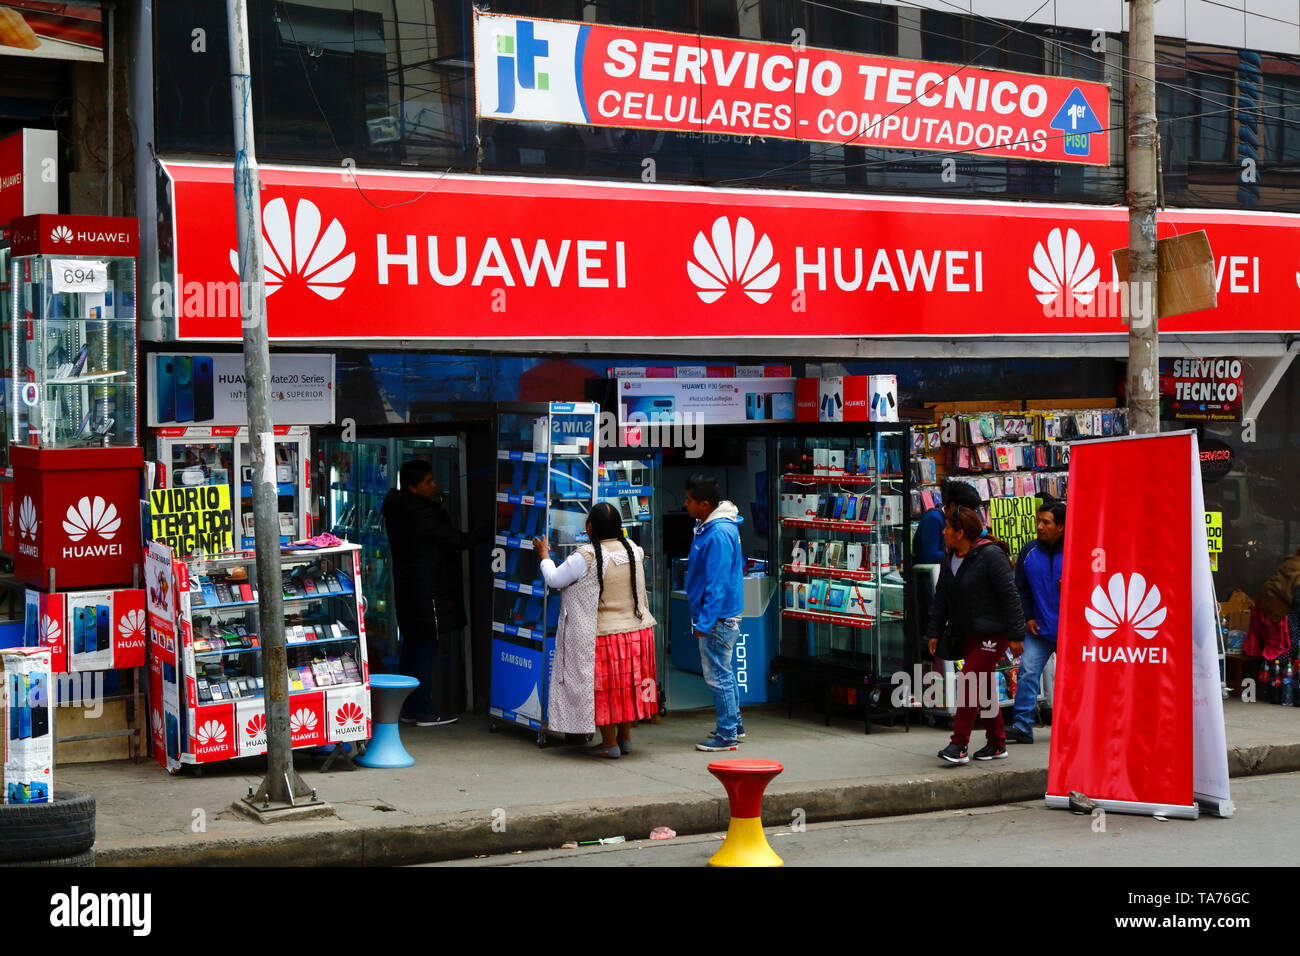 Aymara donna che apre un negozio Huawei in contraband electionics area di mercato, la Paz, Bolivia Foto Stock